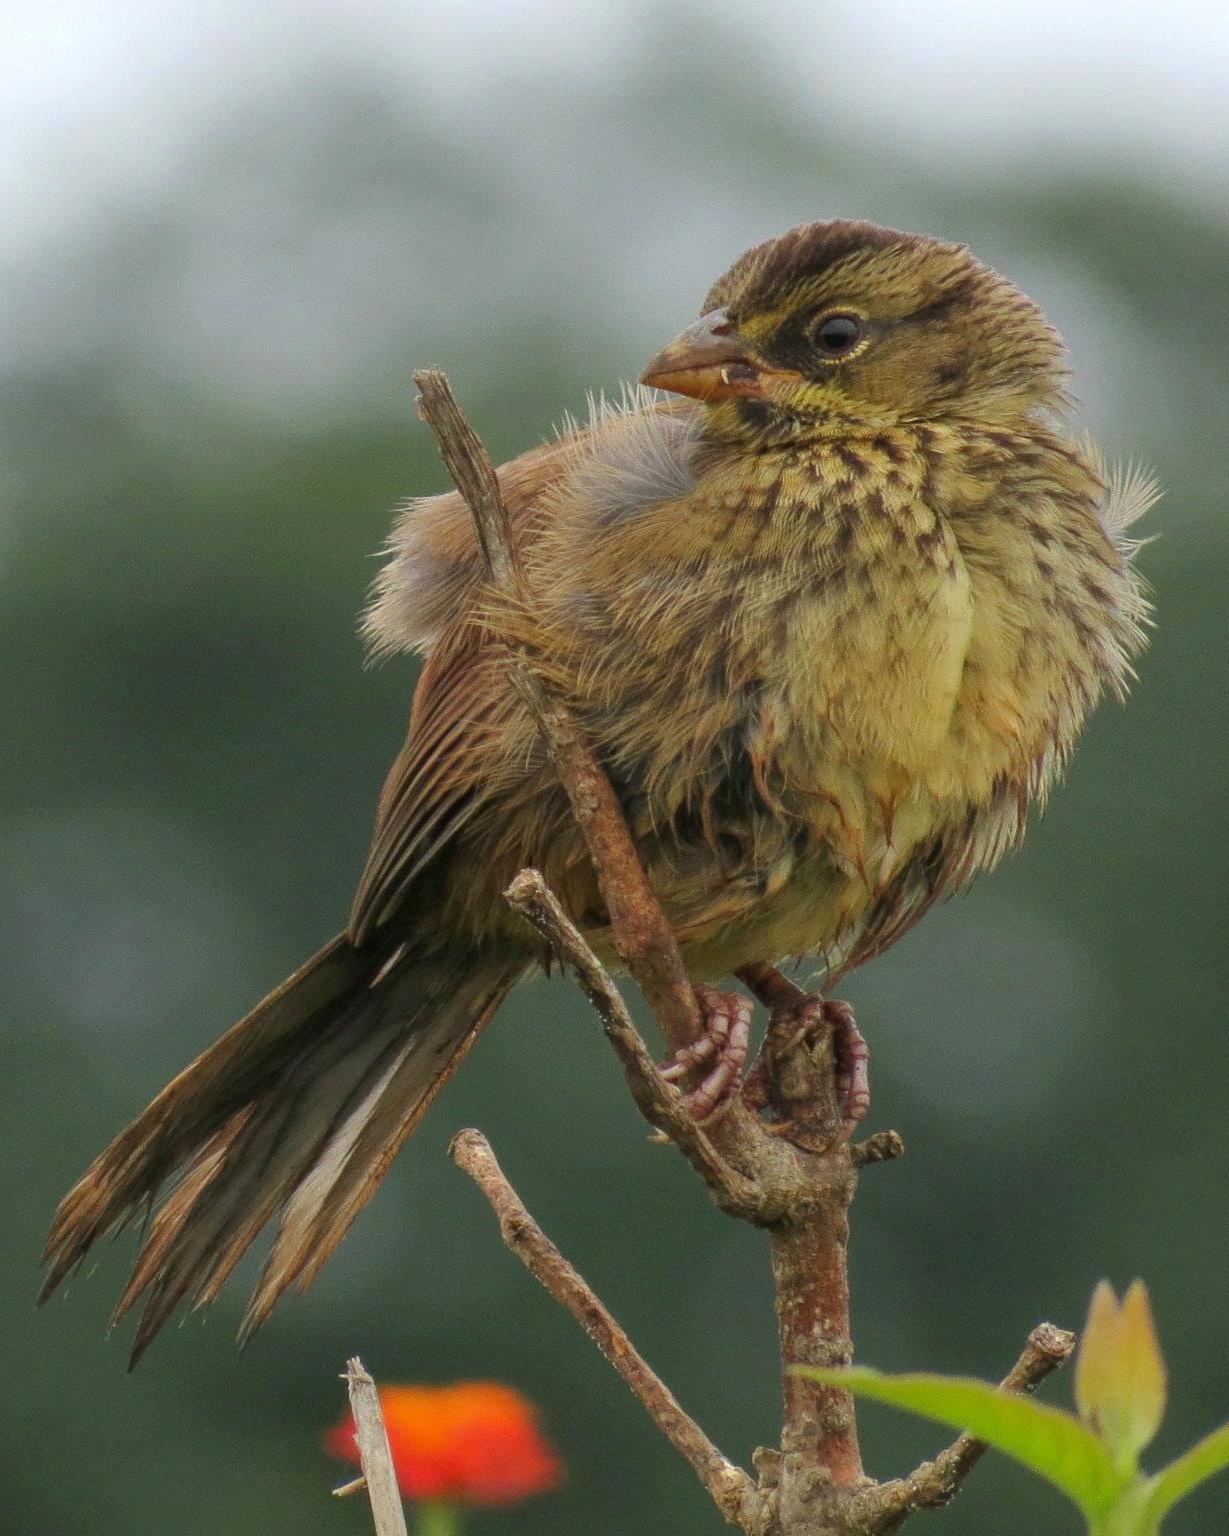 Rusty Sparrow Photo by John van Dort